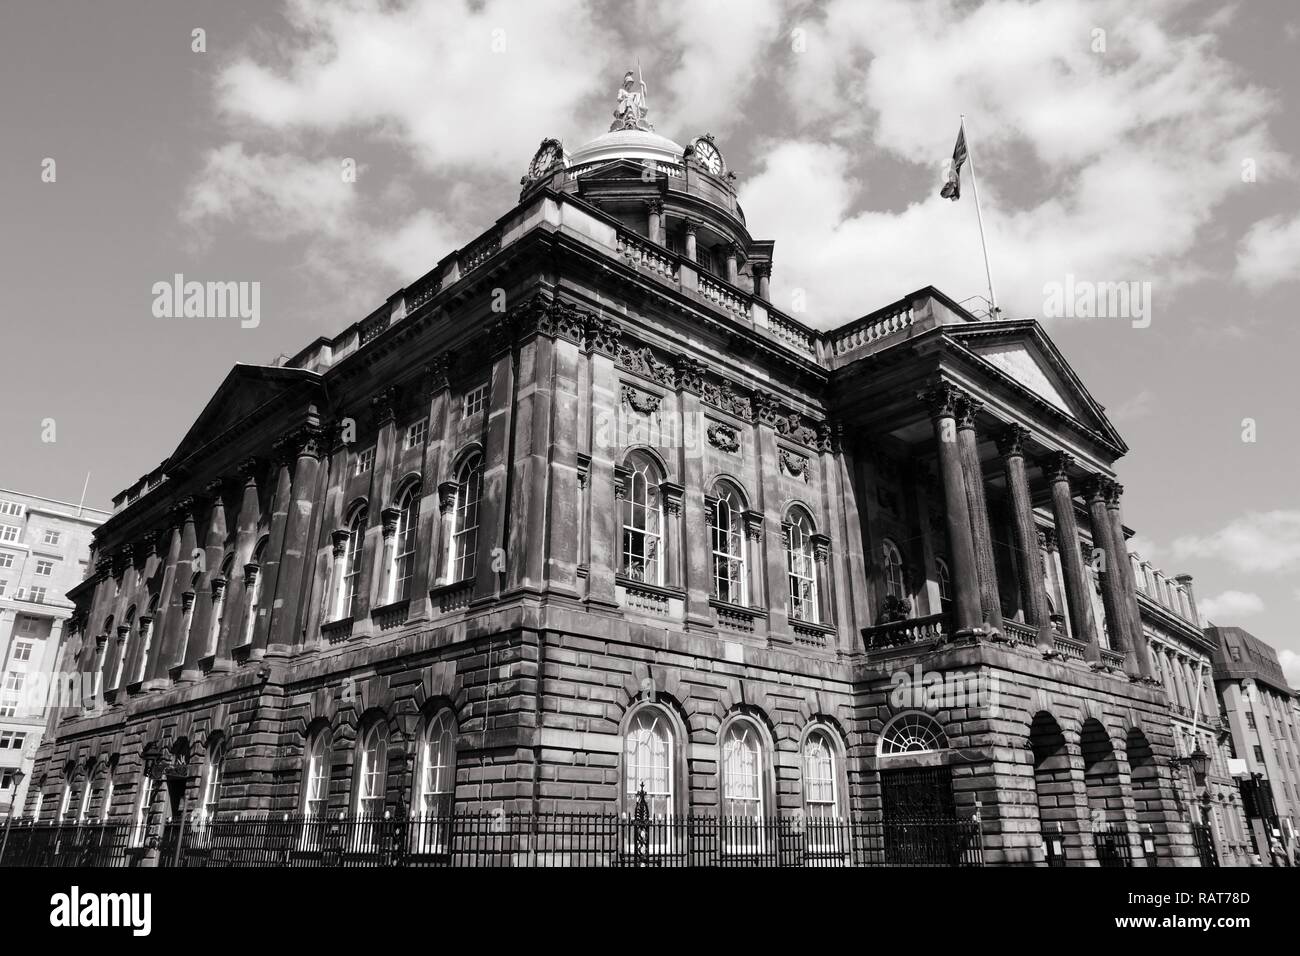 Liverpool - Stadt in Merseyside Grafschaft North West England (UK). Rathaus, georgianische Architektur Stil. Schwarze und weiße Ton - retro monochrome colo Stockfoto